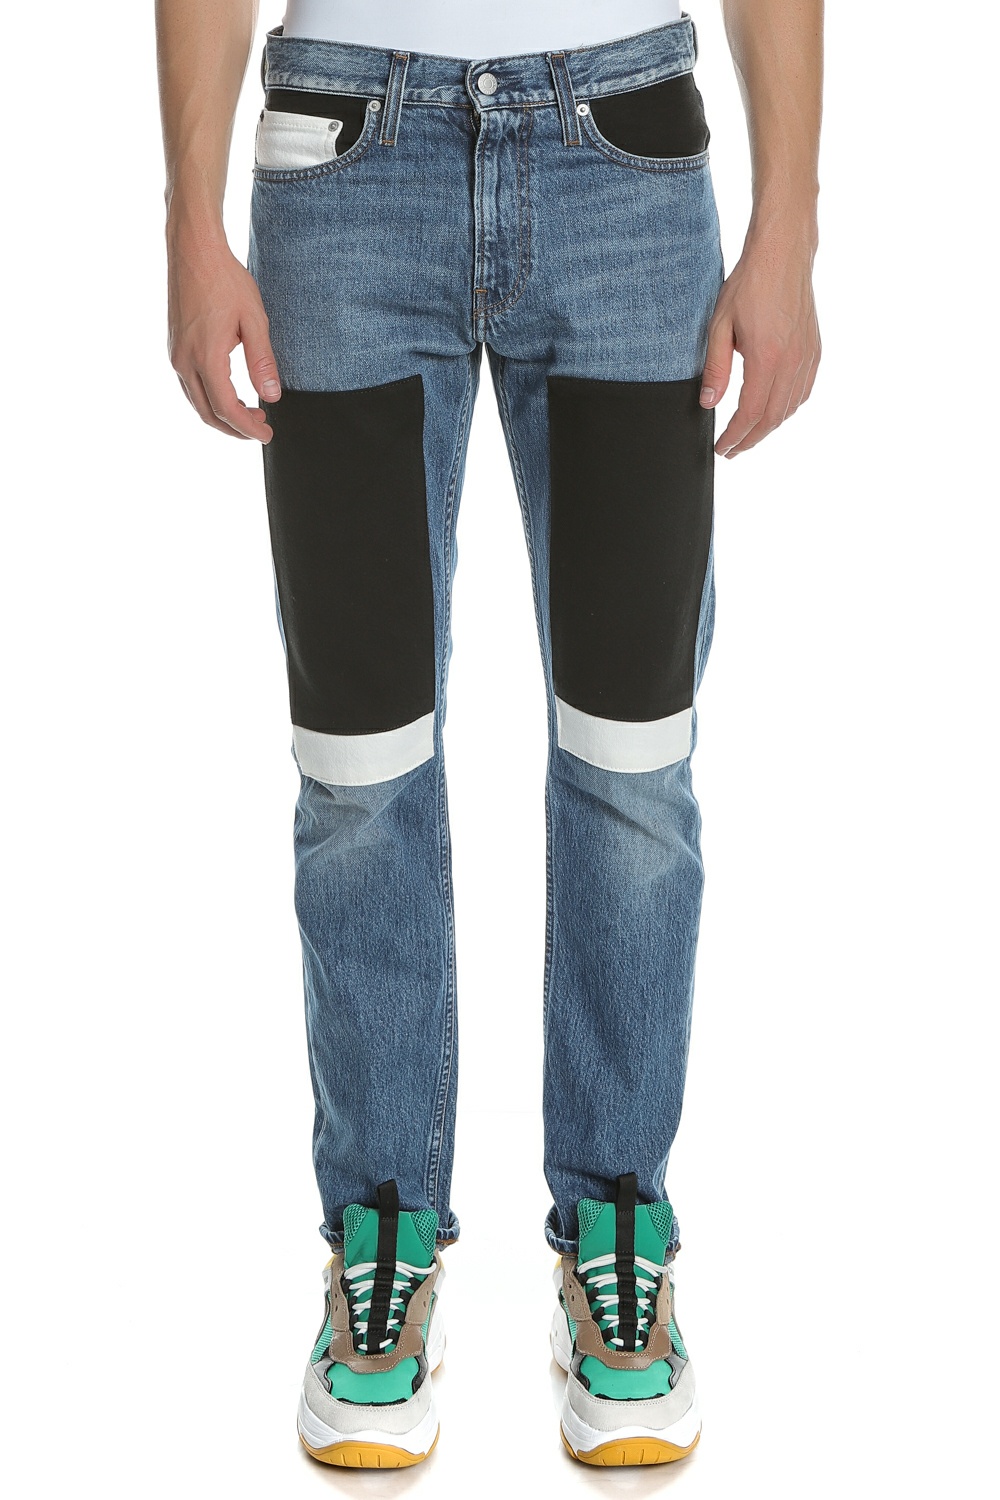 Ανδρικά/Ρούχα/Τζίν/Skinny CALVIN KLEIN JEANS - Ανδρικό τζιν παντελόνι Calvin Klein CKJ 026 μπλε